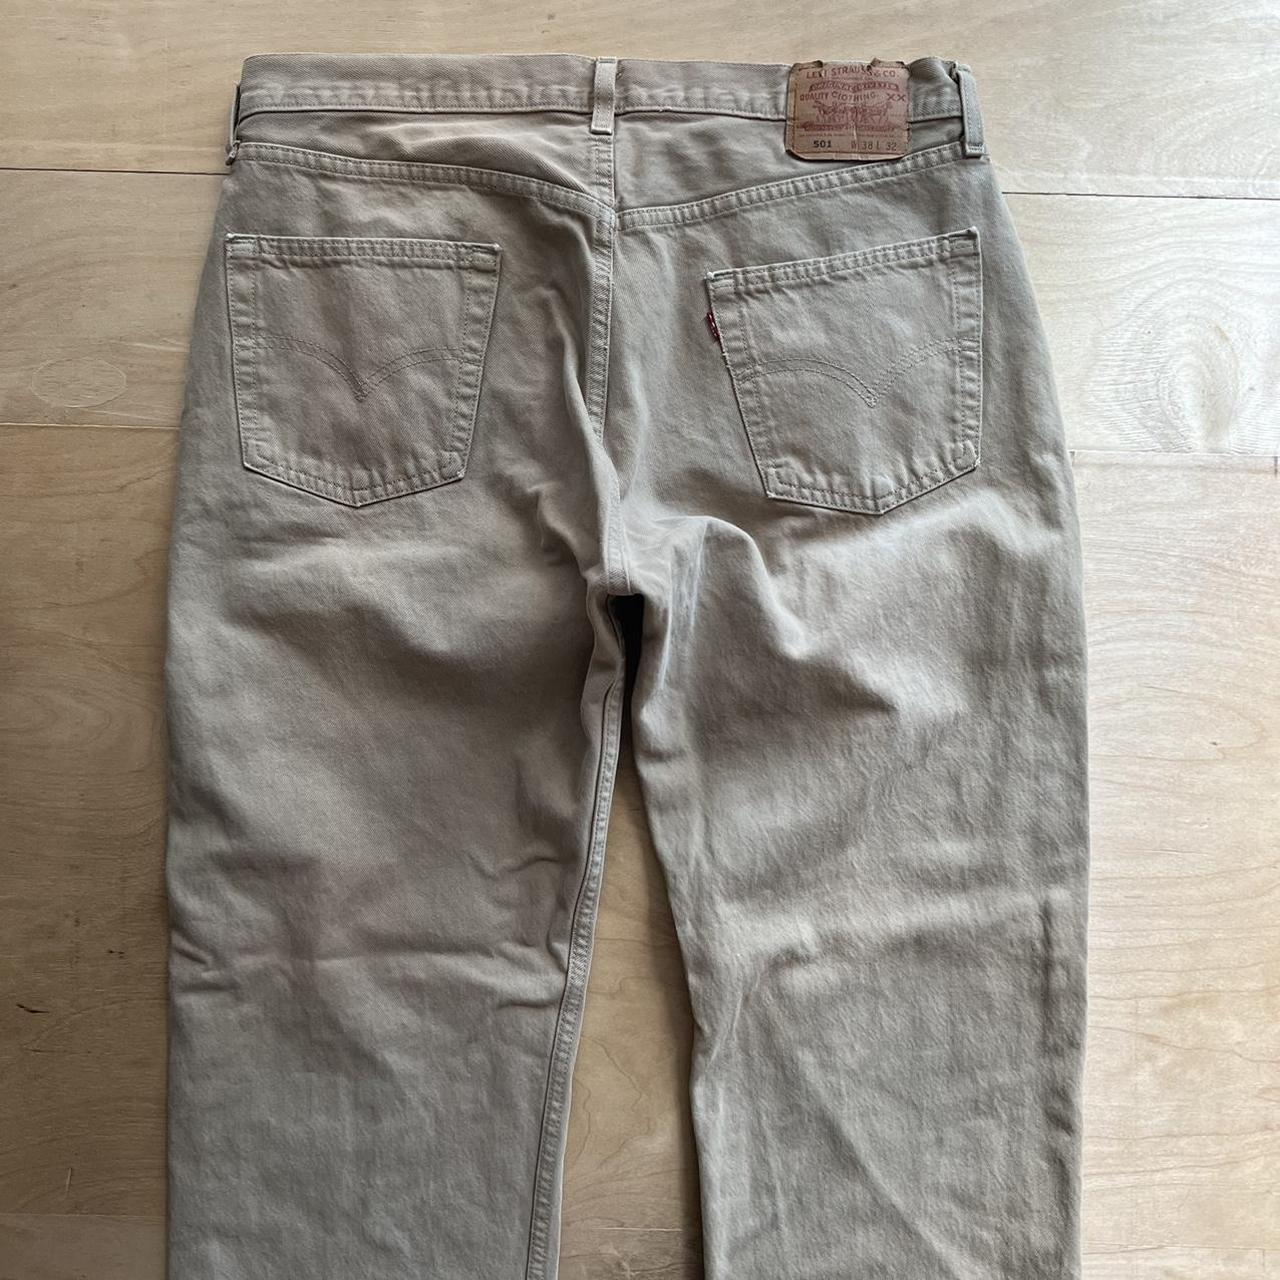 Vintage Levis 501 Jeans 36x32 Brown 90s Denim Made... - Depop